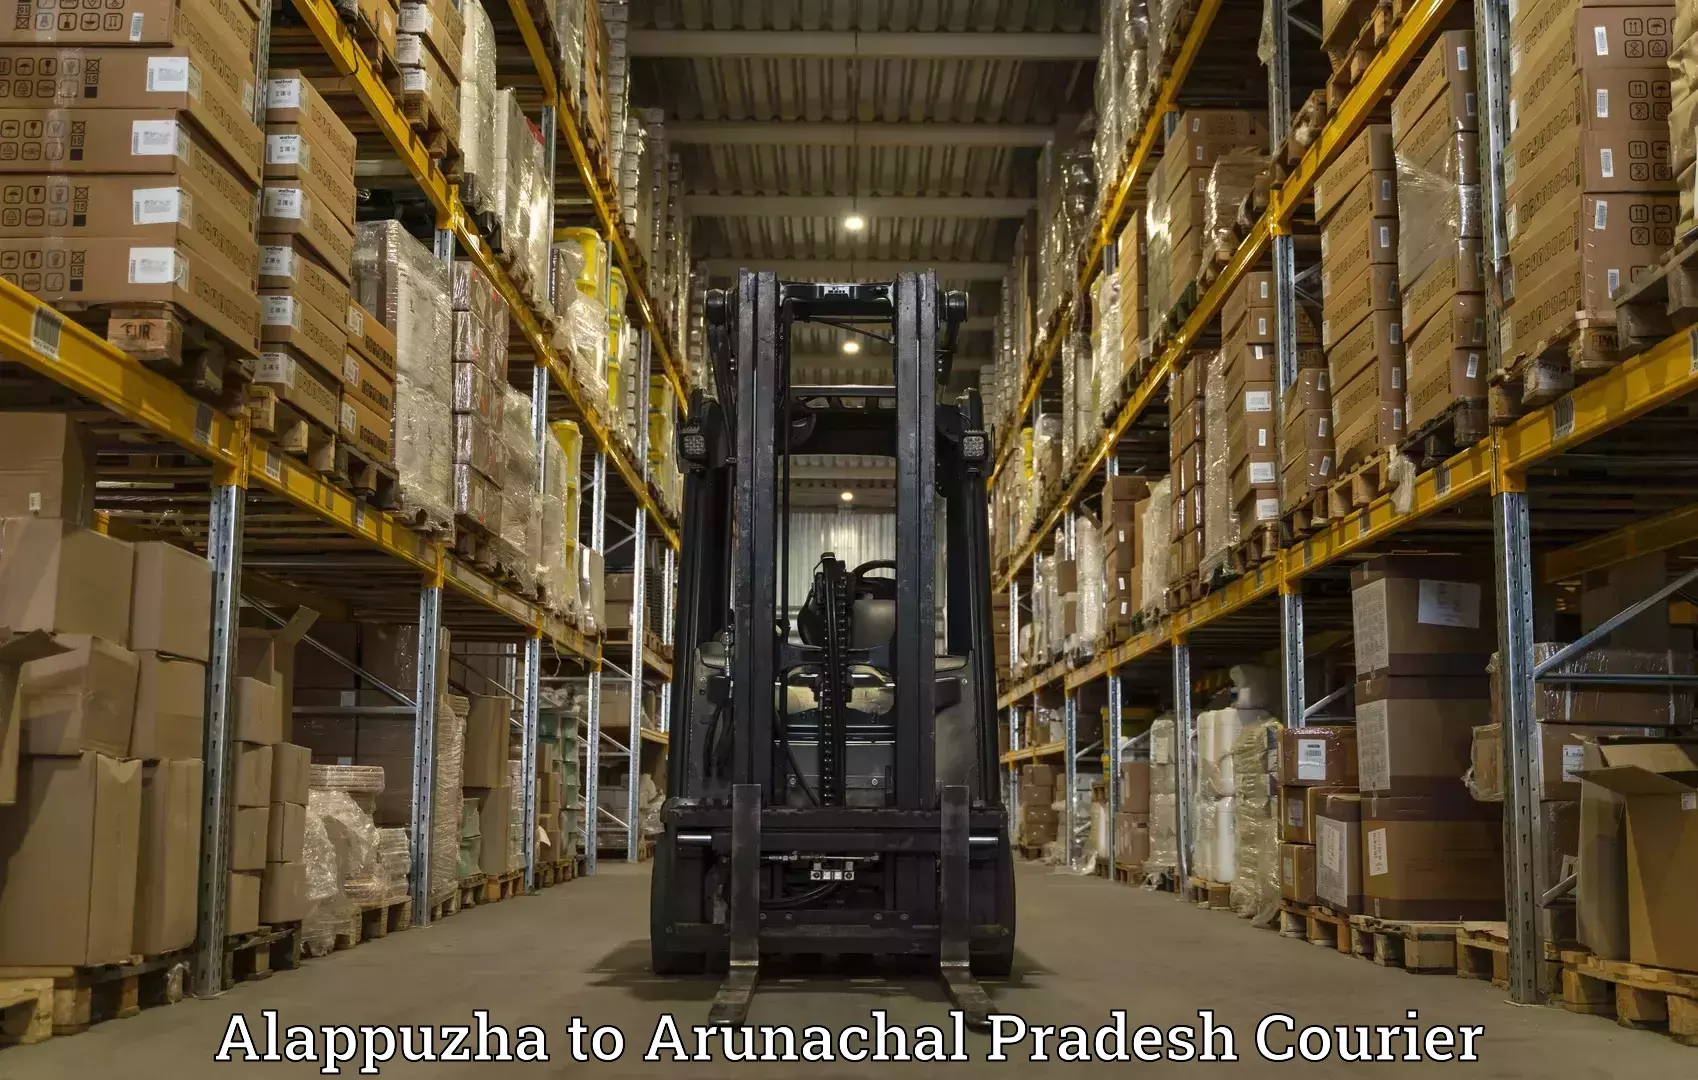 Express delivery network Alappuzha to Arunachal Pradesh